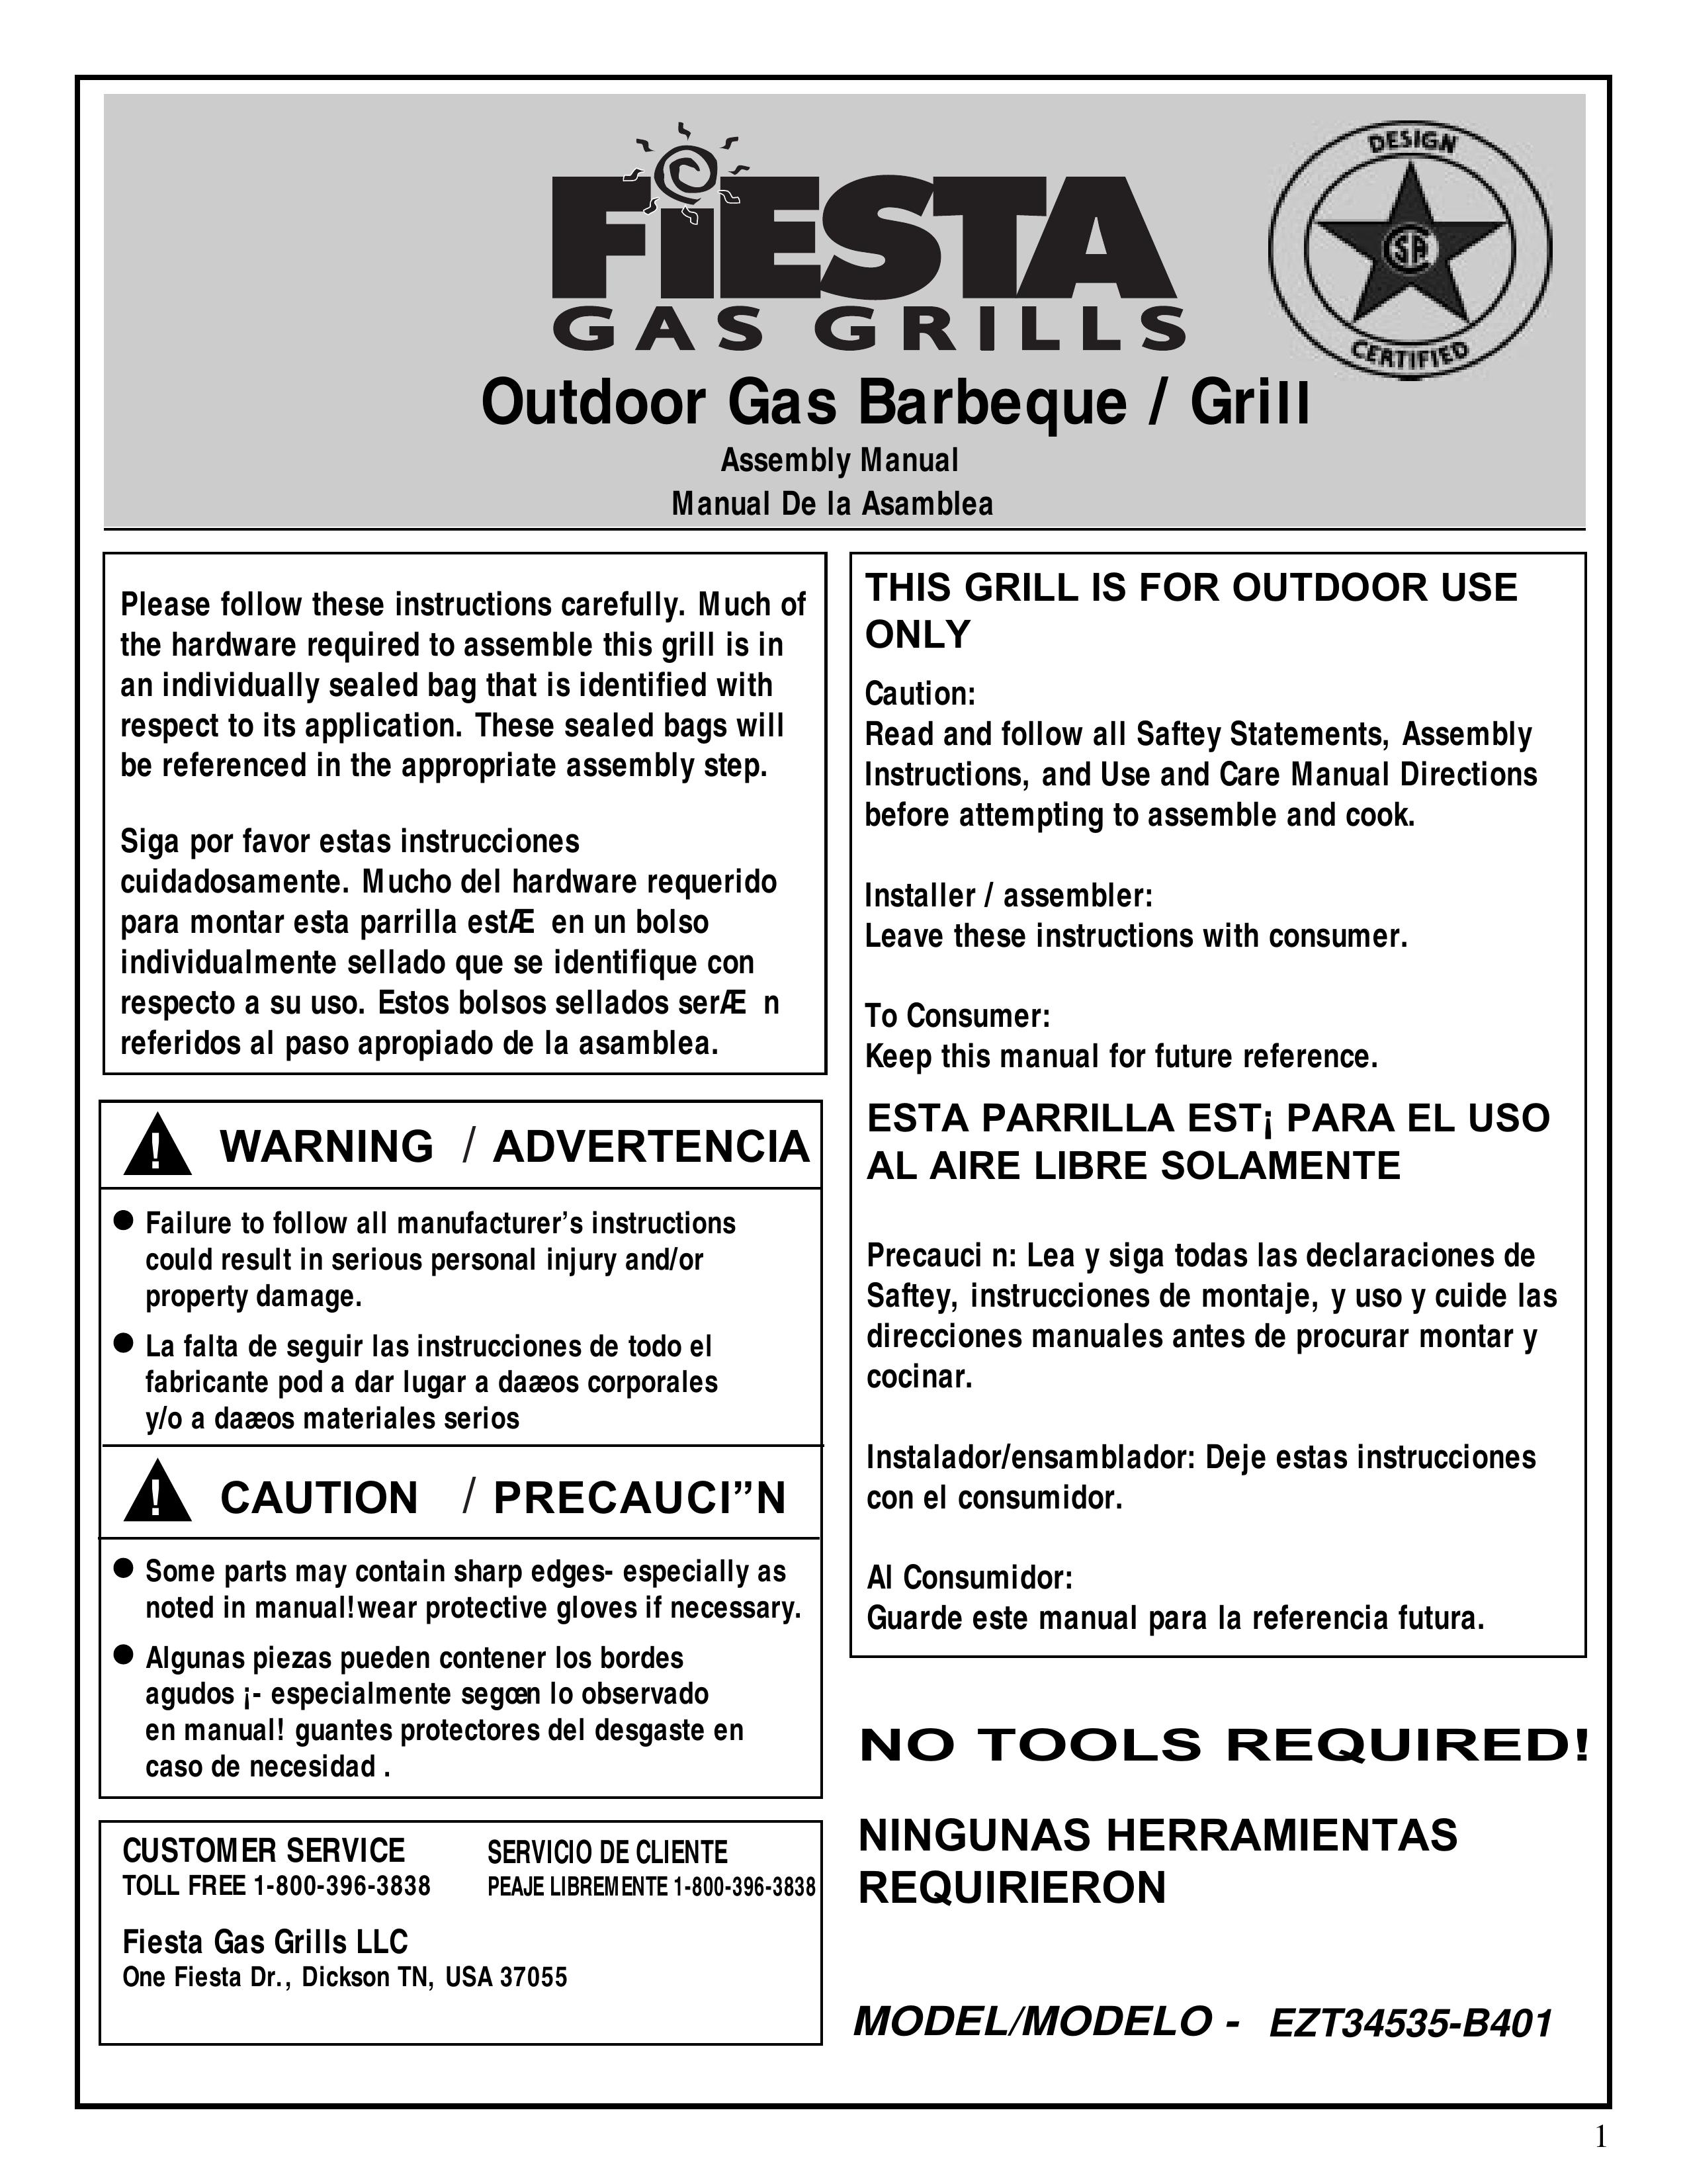 Fiesta EZT34535-B401 Gas Grill User Manual